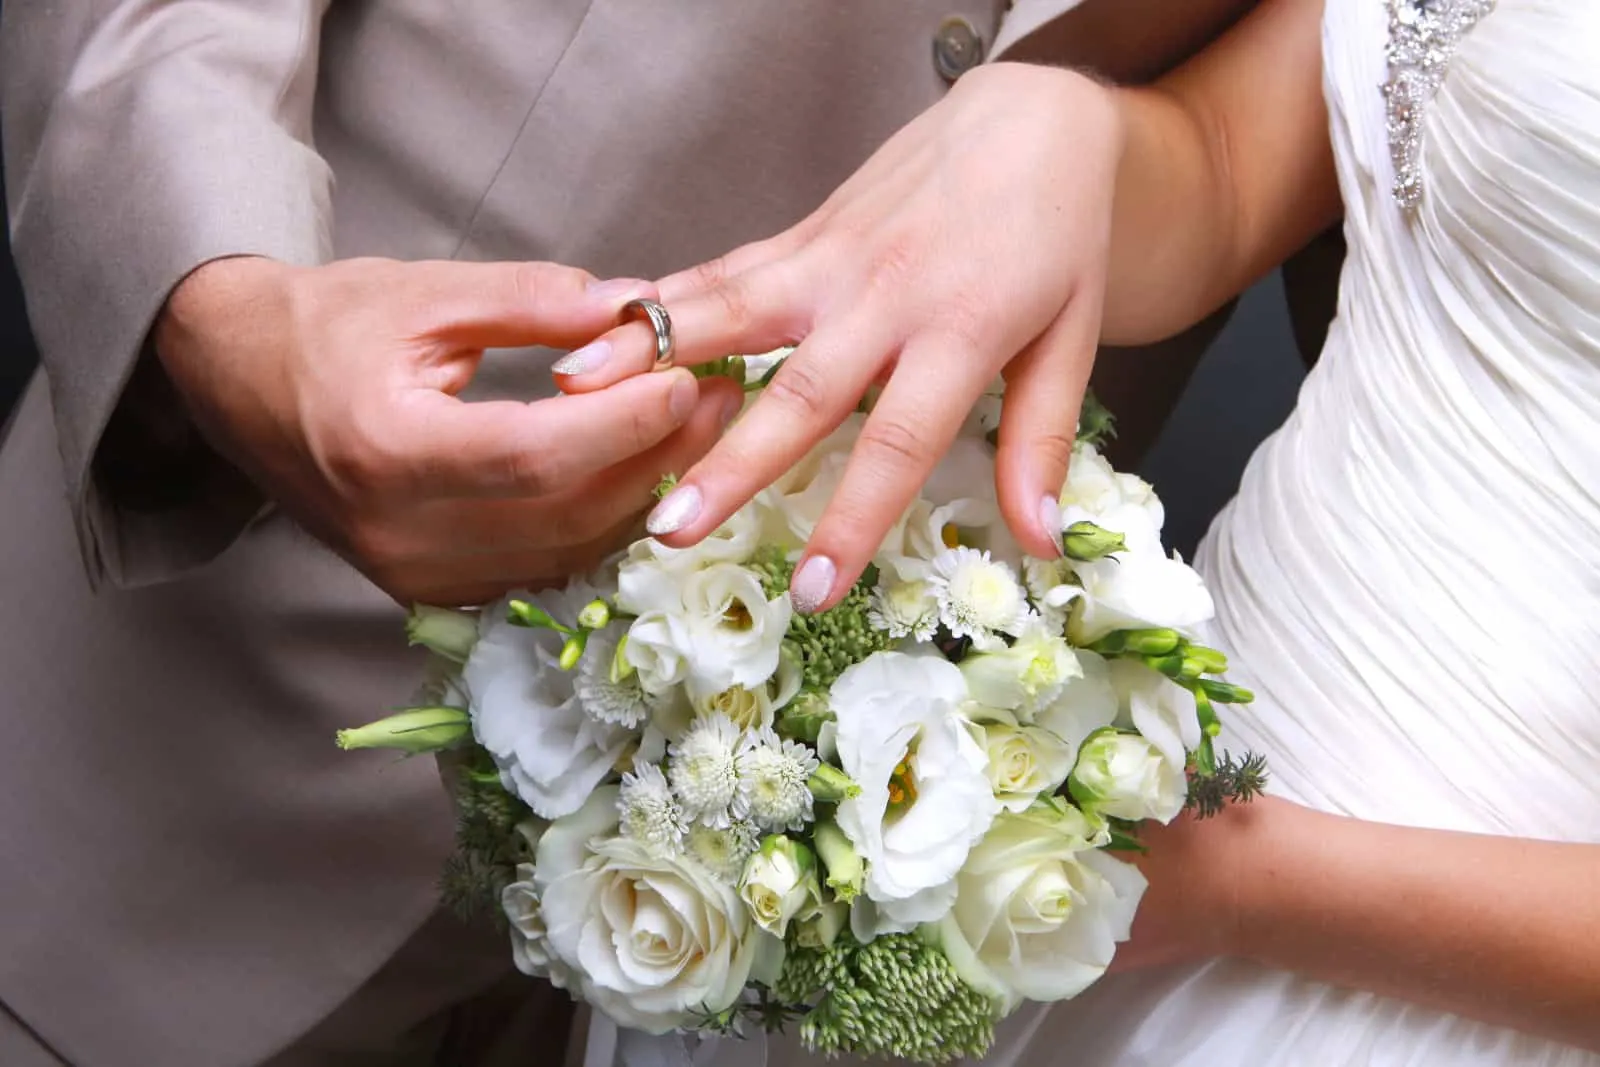 Der Bräutigam legt der Braut einen Ehering auf die Hand